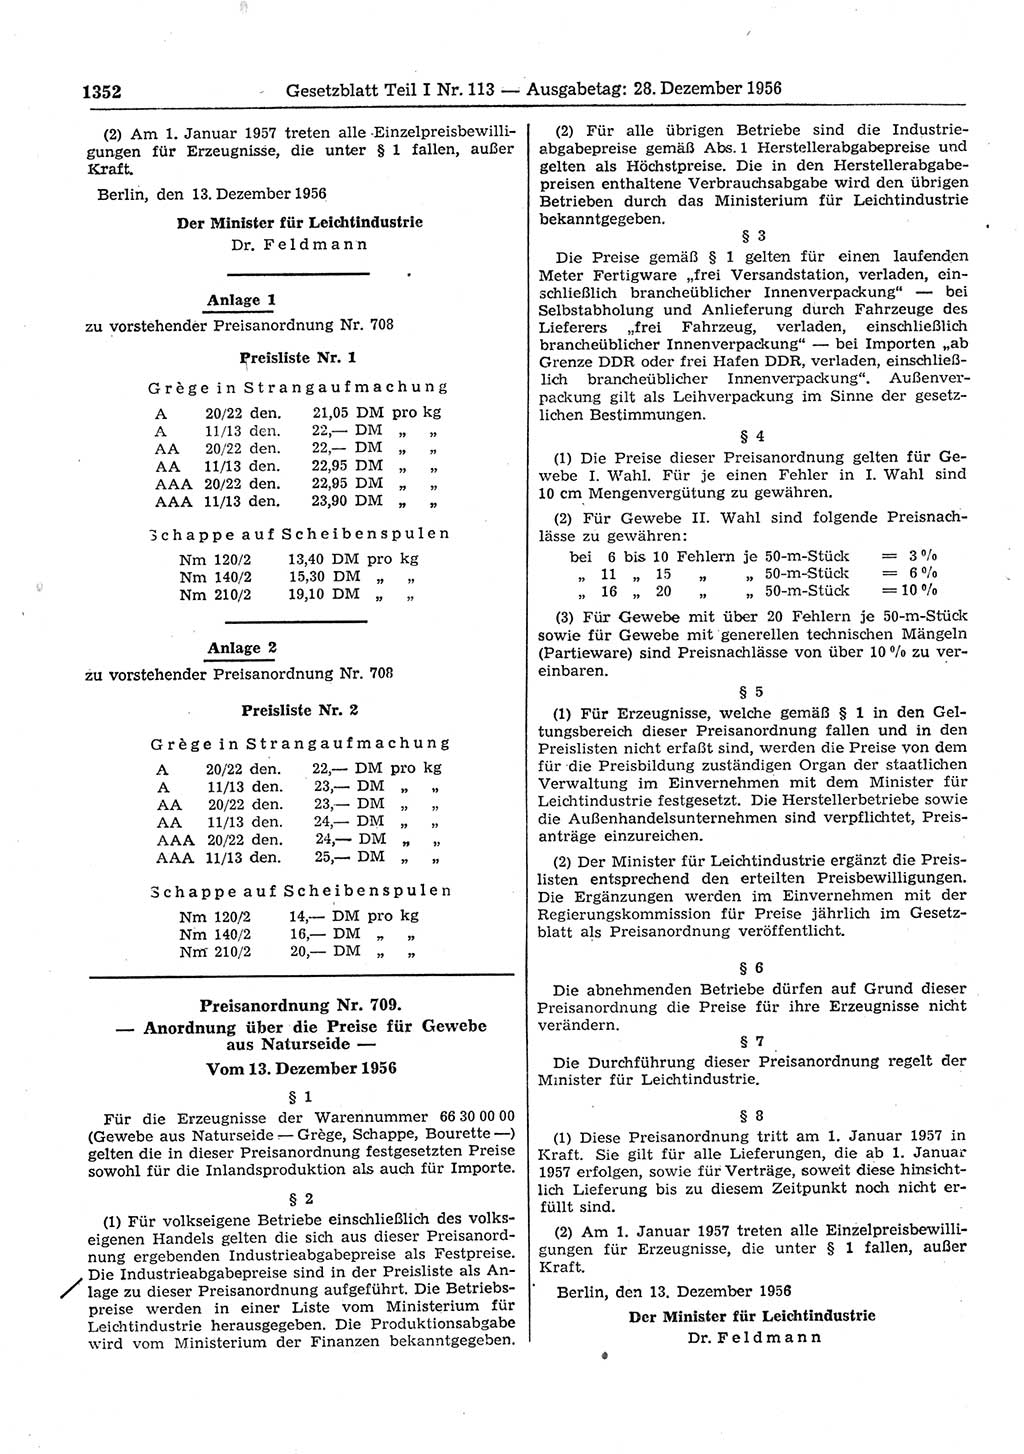 Gesetzblatt (GBl.) der Deutschen Demokratischen Republik (DDR) Teil Ⅰ 1956, Seite 1352 (GBl. DDR Ⅰ 1956, S. 1352)